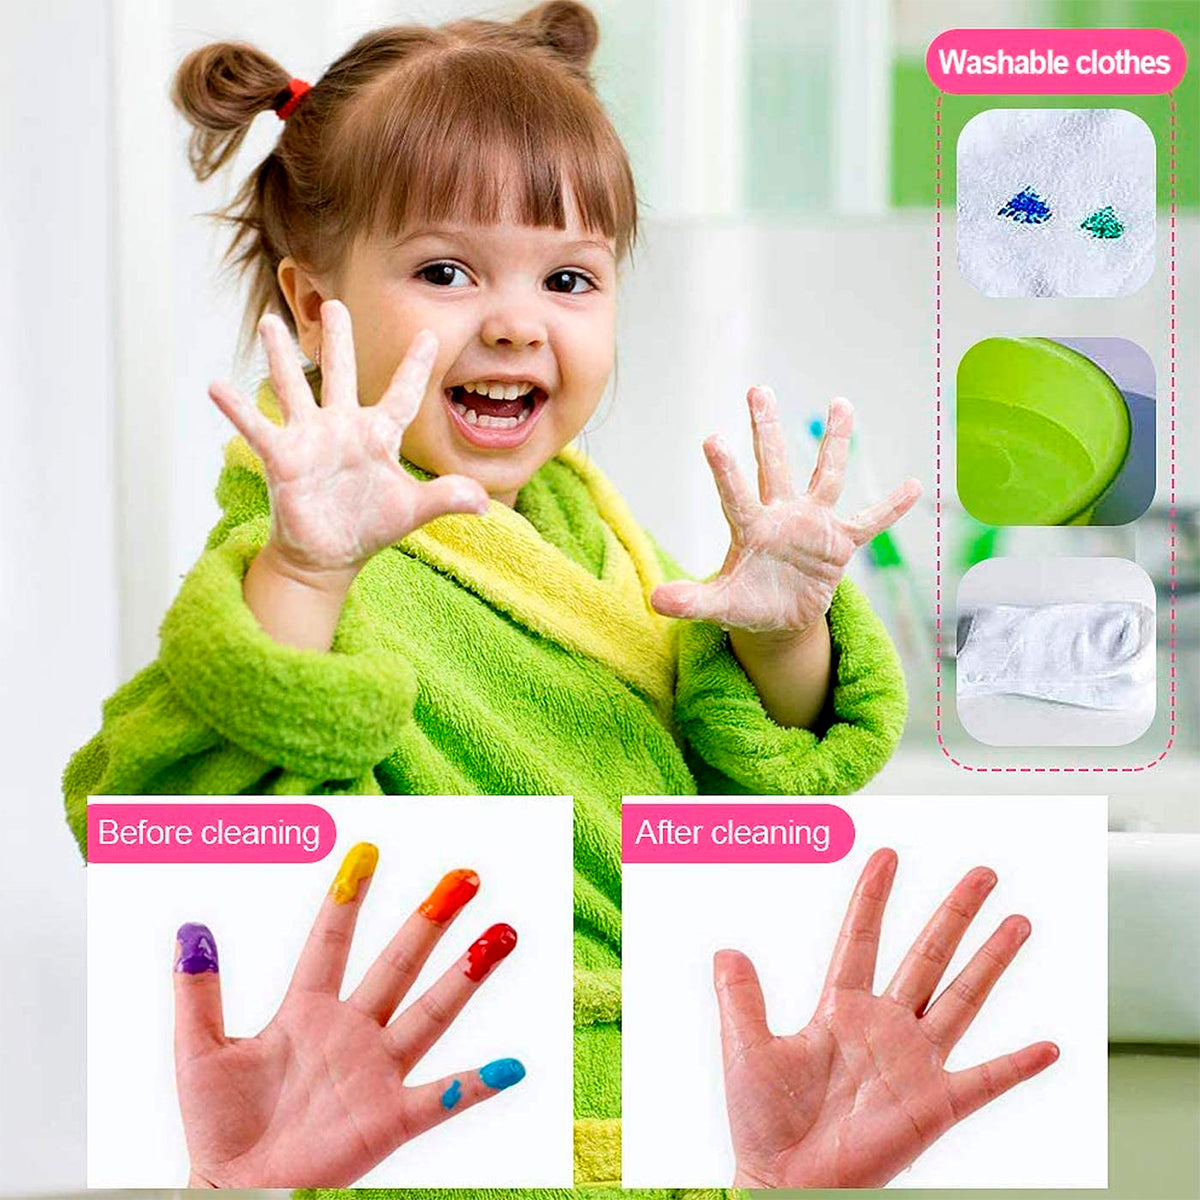 CARIOCA Baby - Pintura a Dedos Super Lavable 8 Colores Surtidos